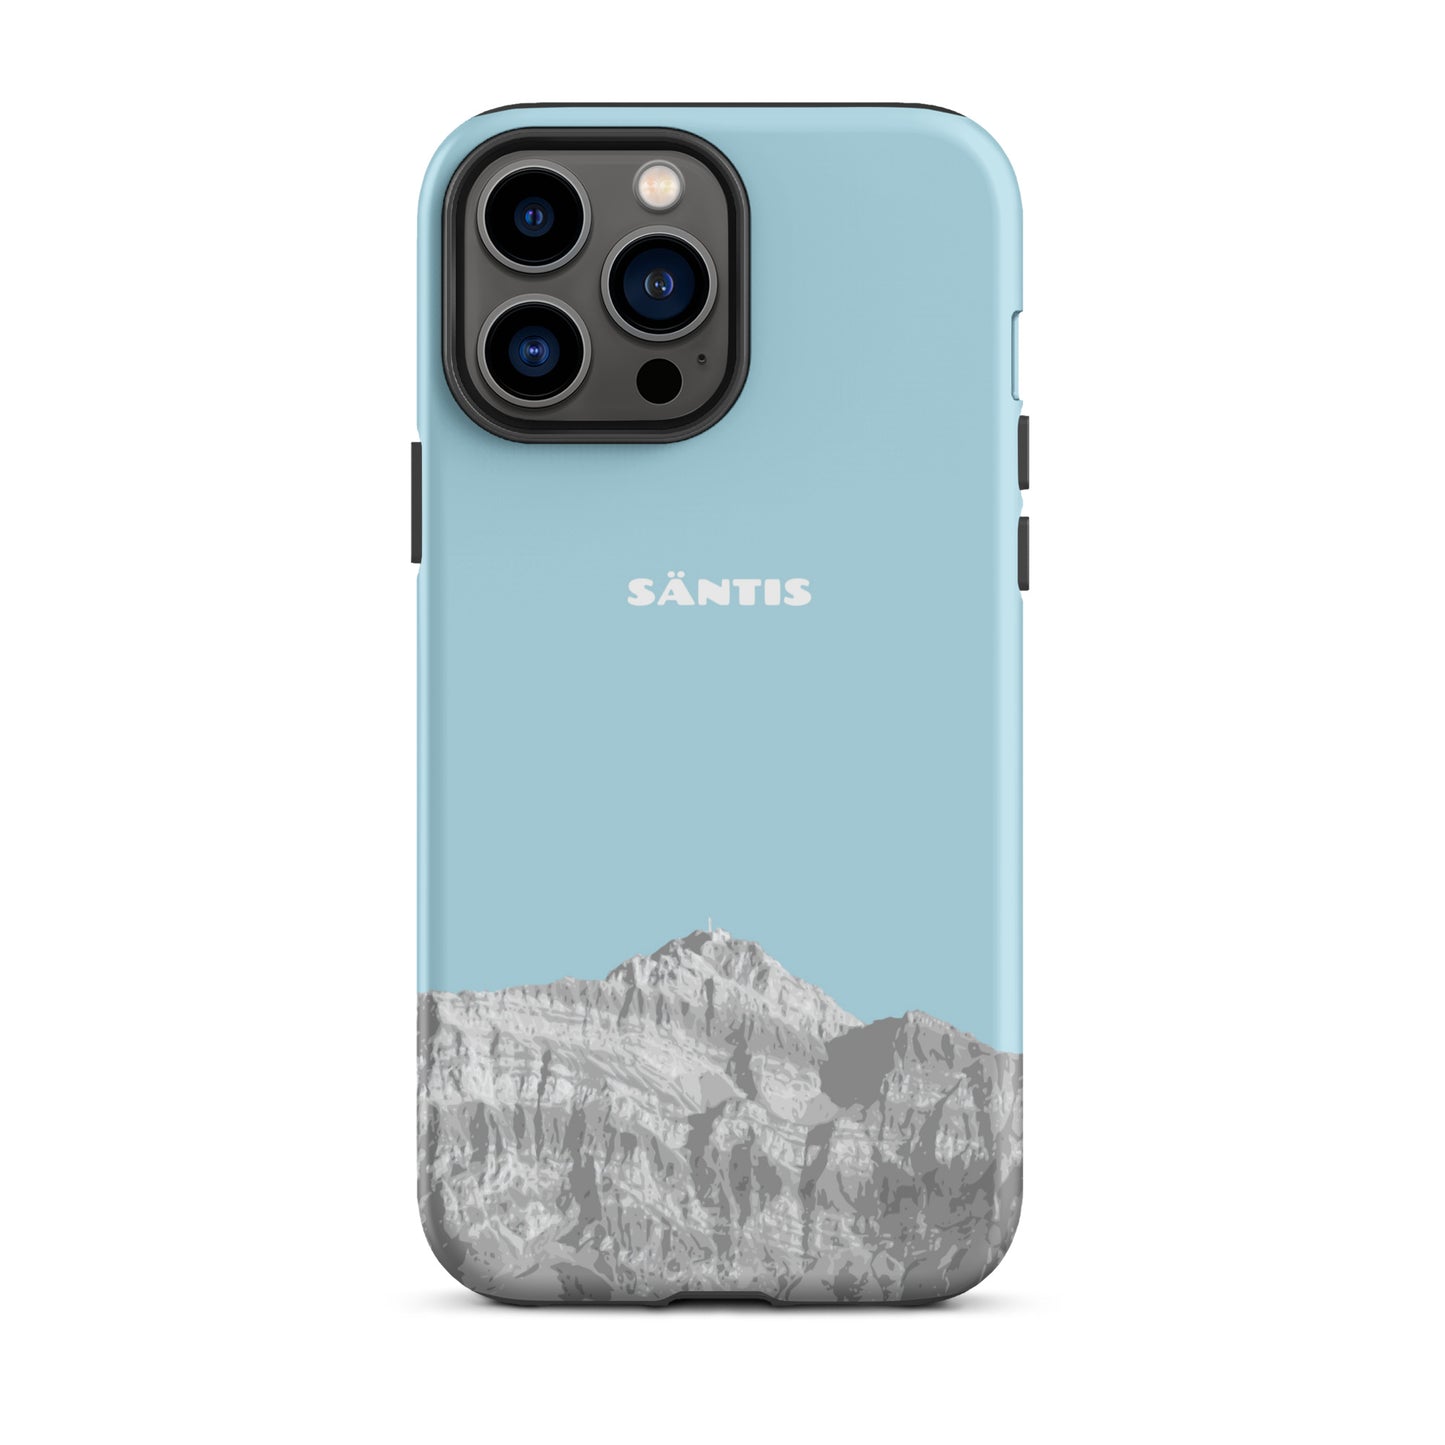 Hülle für das iPhone 13 Pro Max von Apple in der Farbe Hellblau, dass den Säntis im Alpstein zeigt.